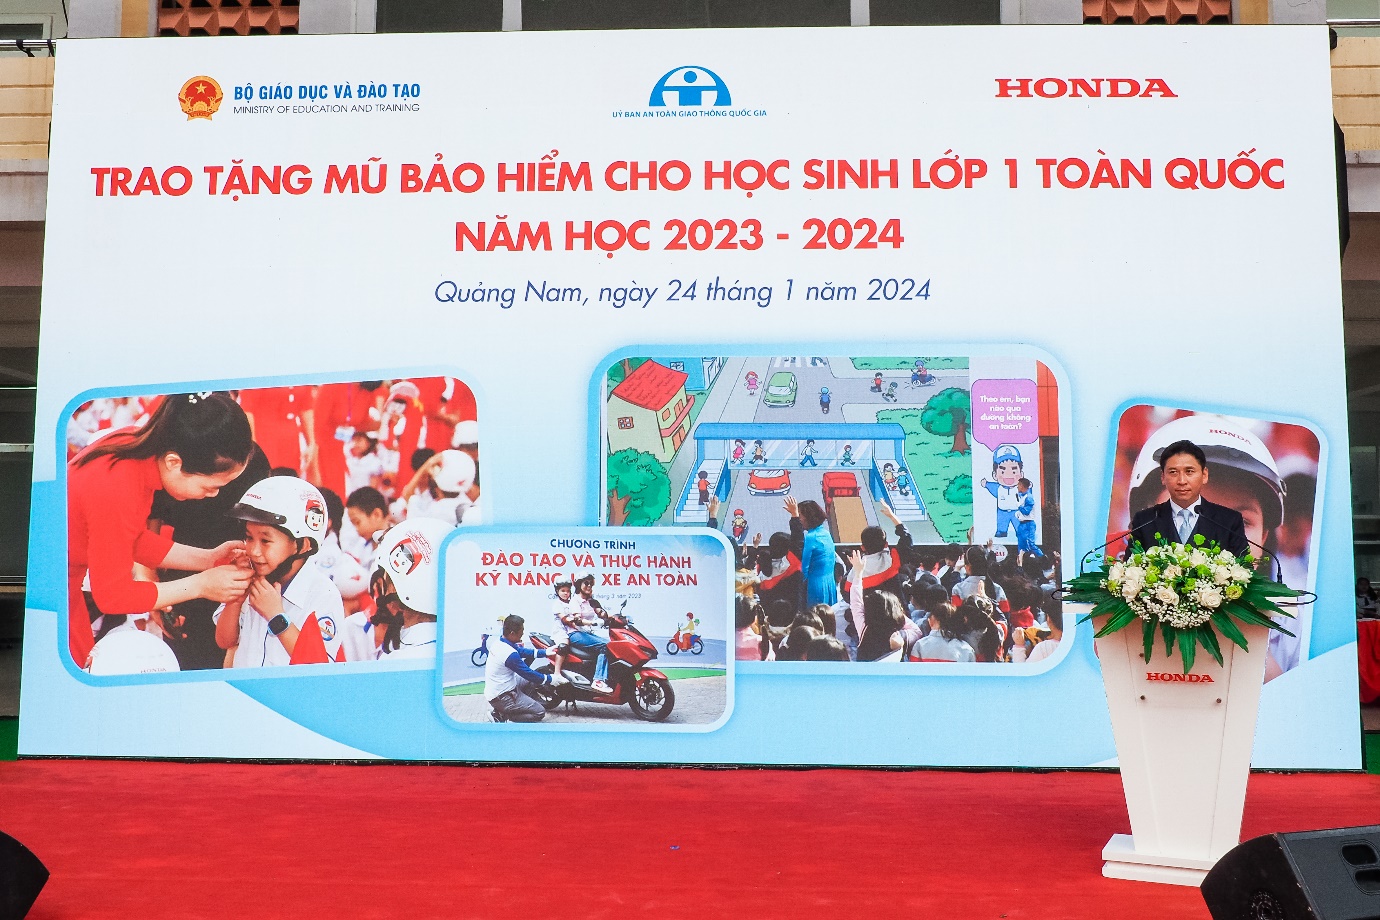 Hành trình Trao tặng mũ bảo hiểm cho học sinh lớp 1 trên toàn quốc năm học 2023 – 2024 của Honda Việt Nam- Ảnh 1.